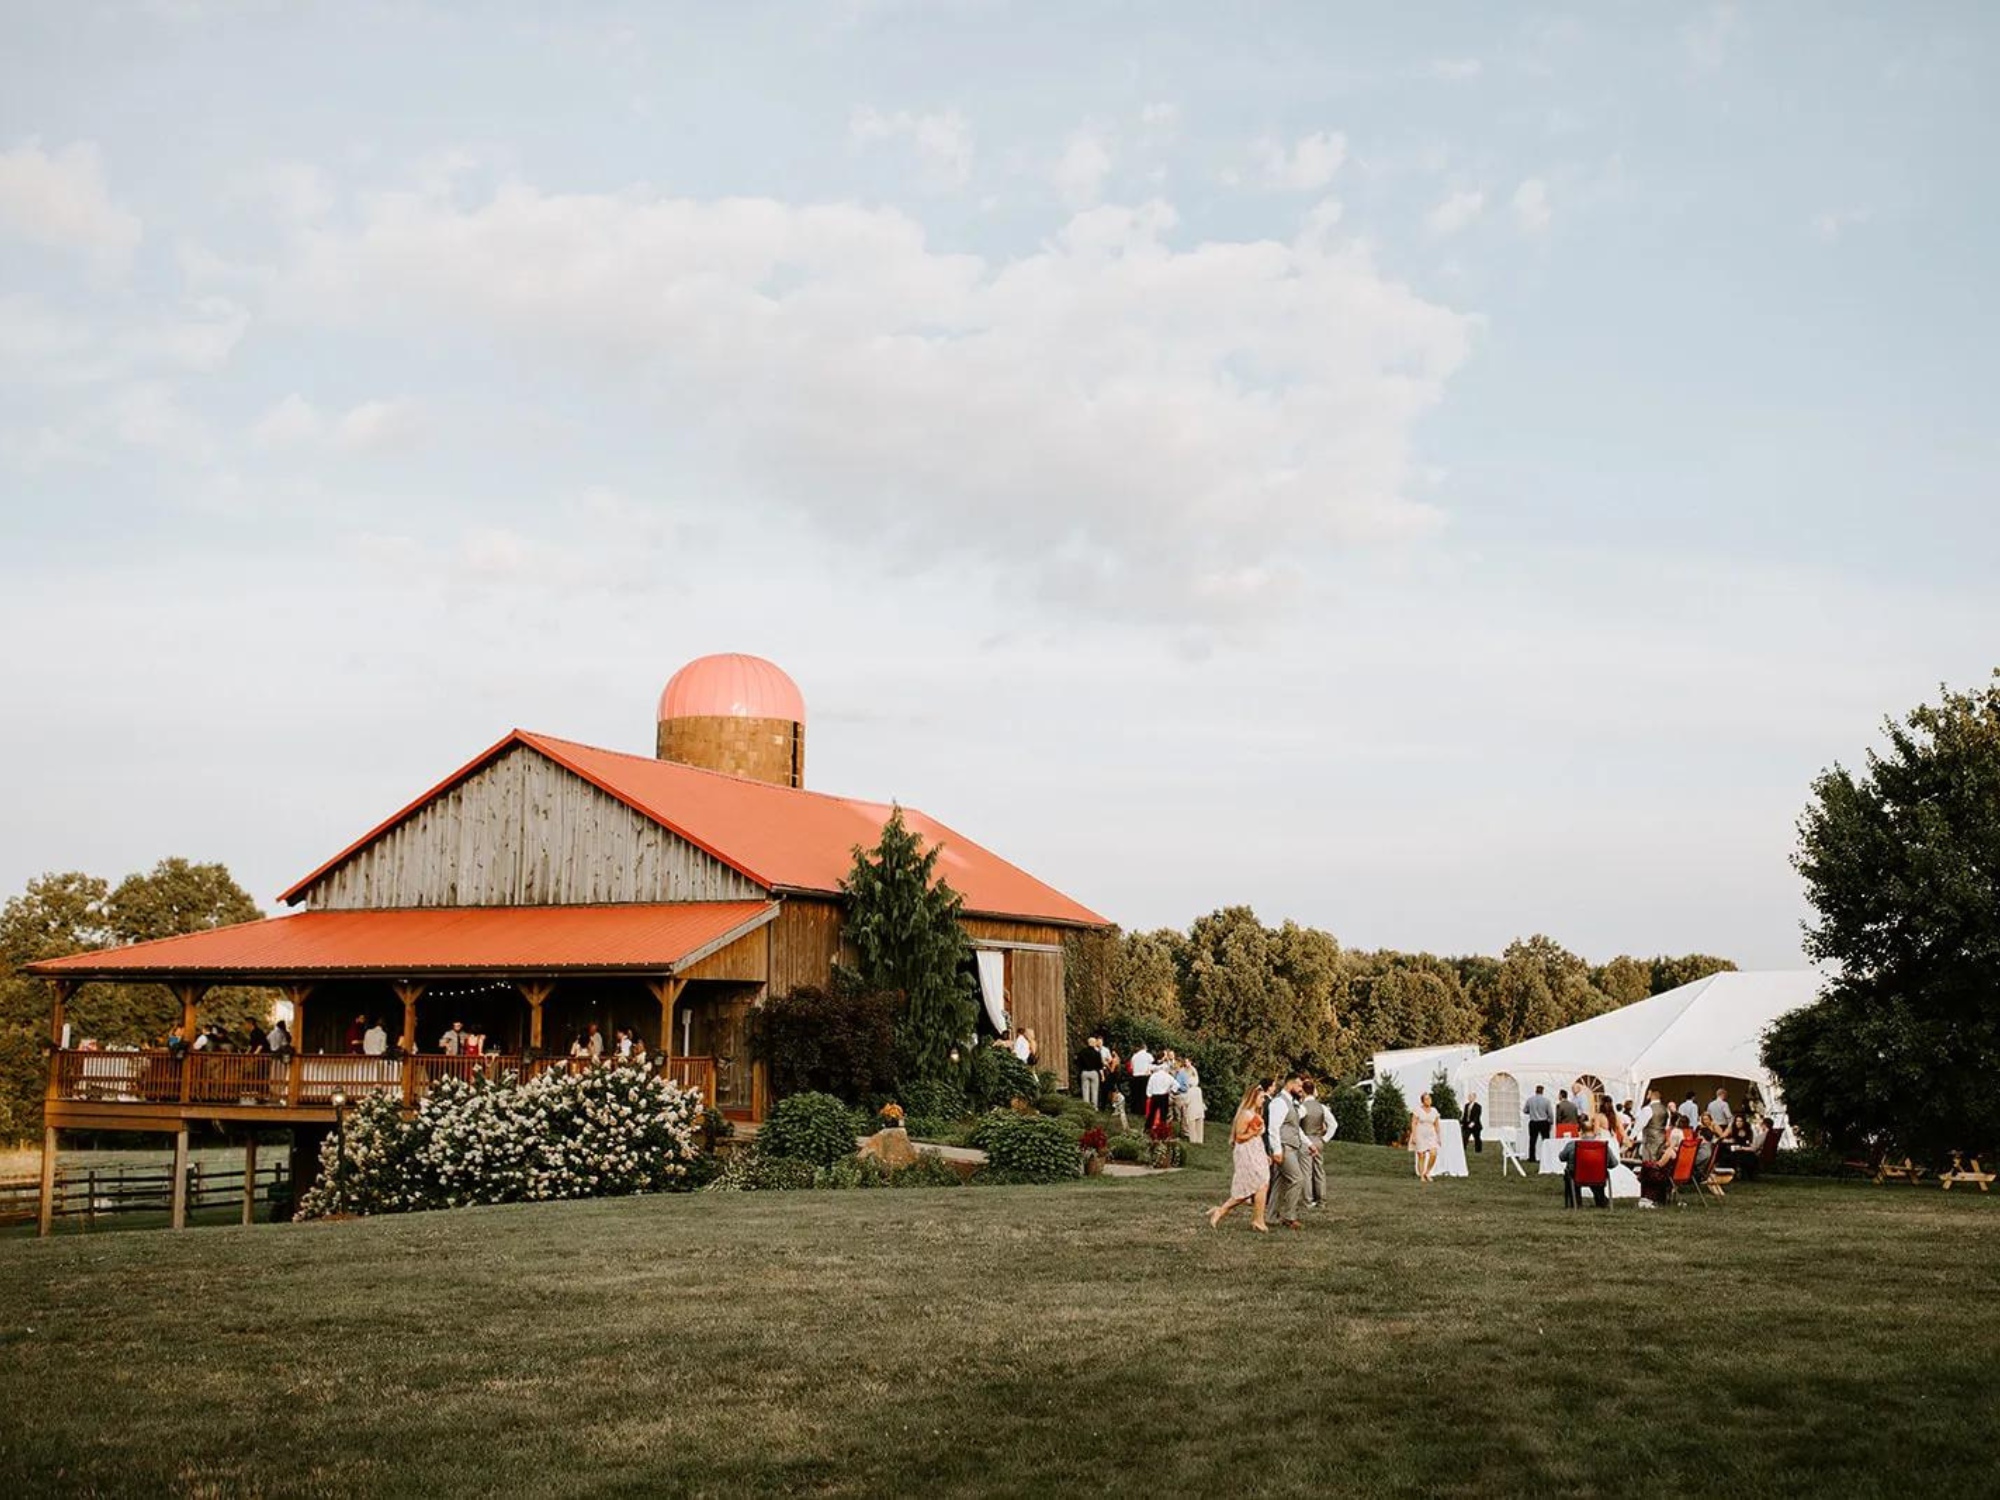 Armstrong Farms barn wedding venue in Saxonburg, Pennsylvania